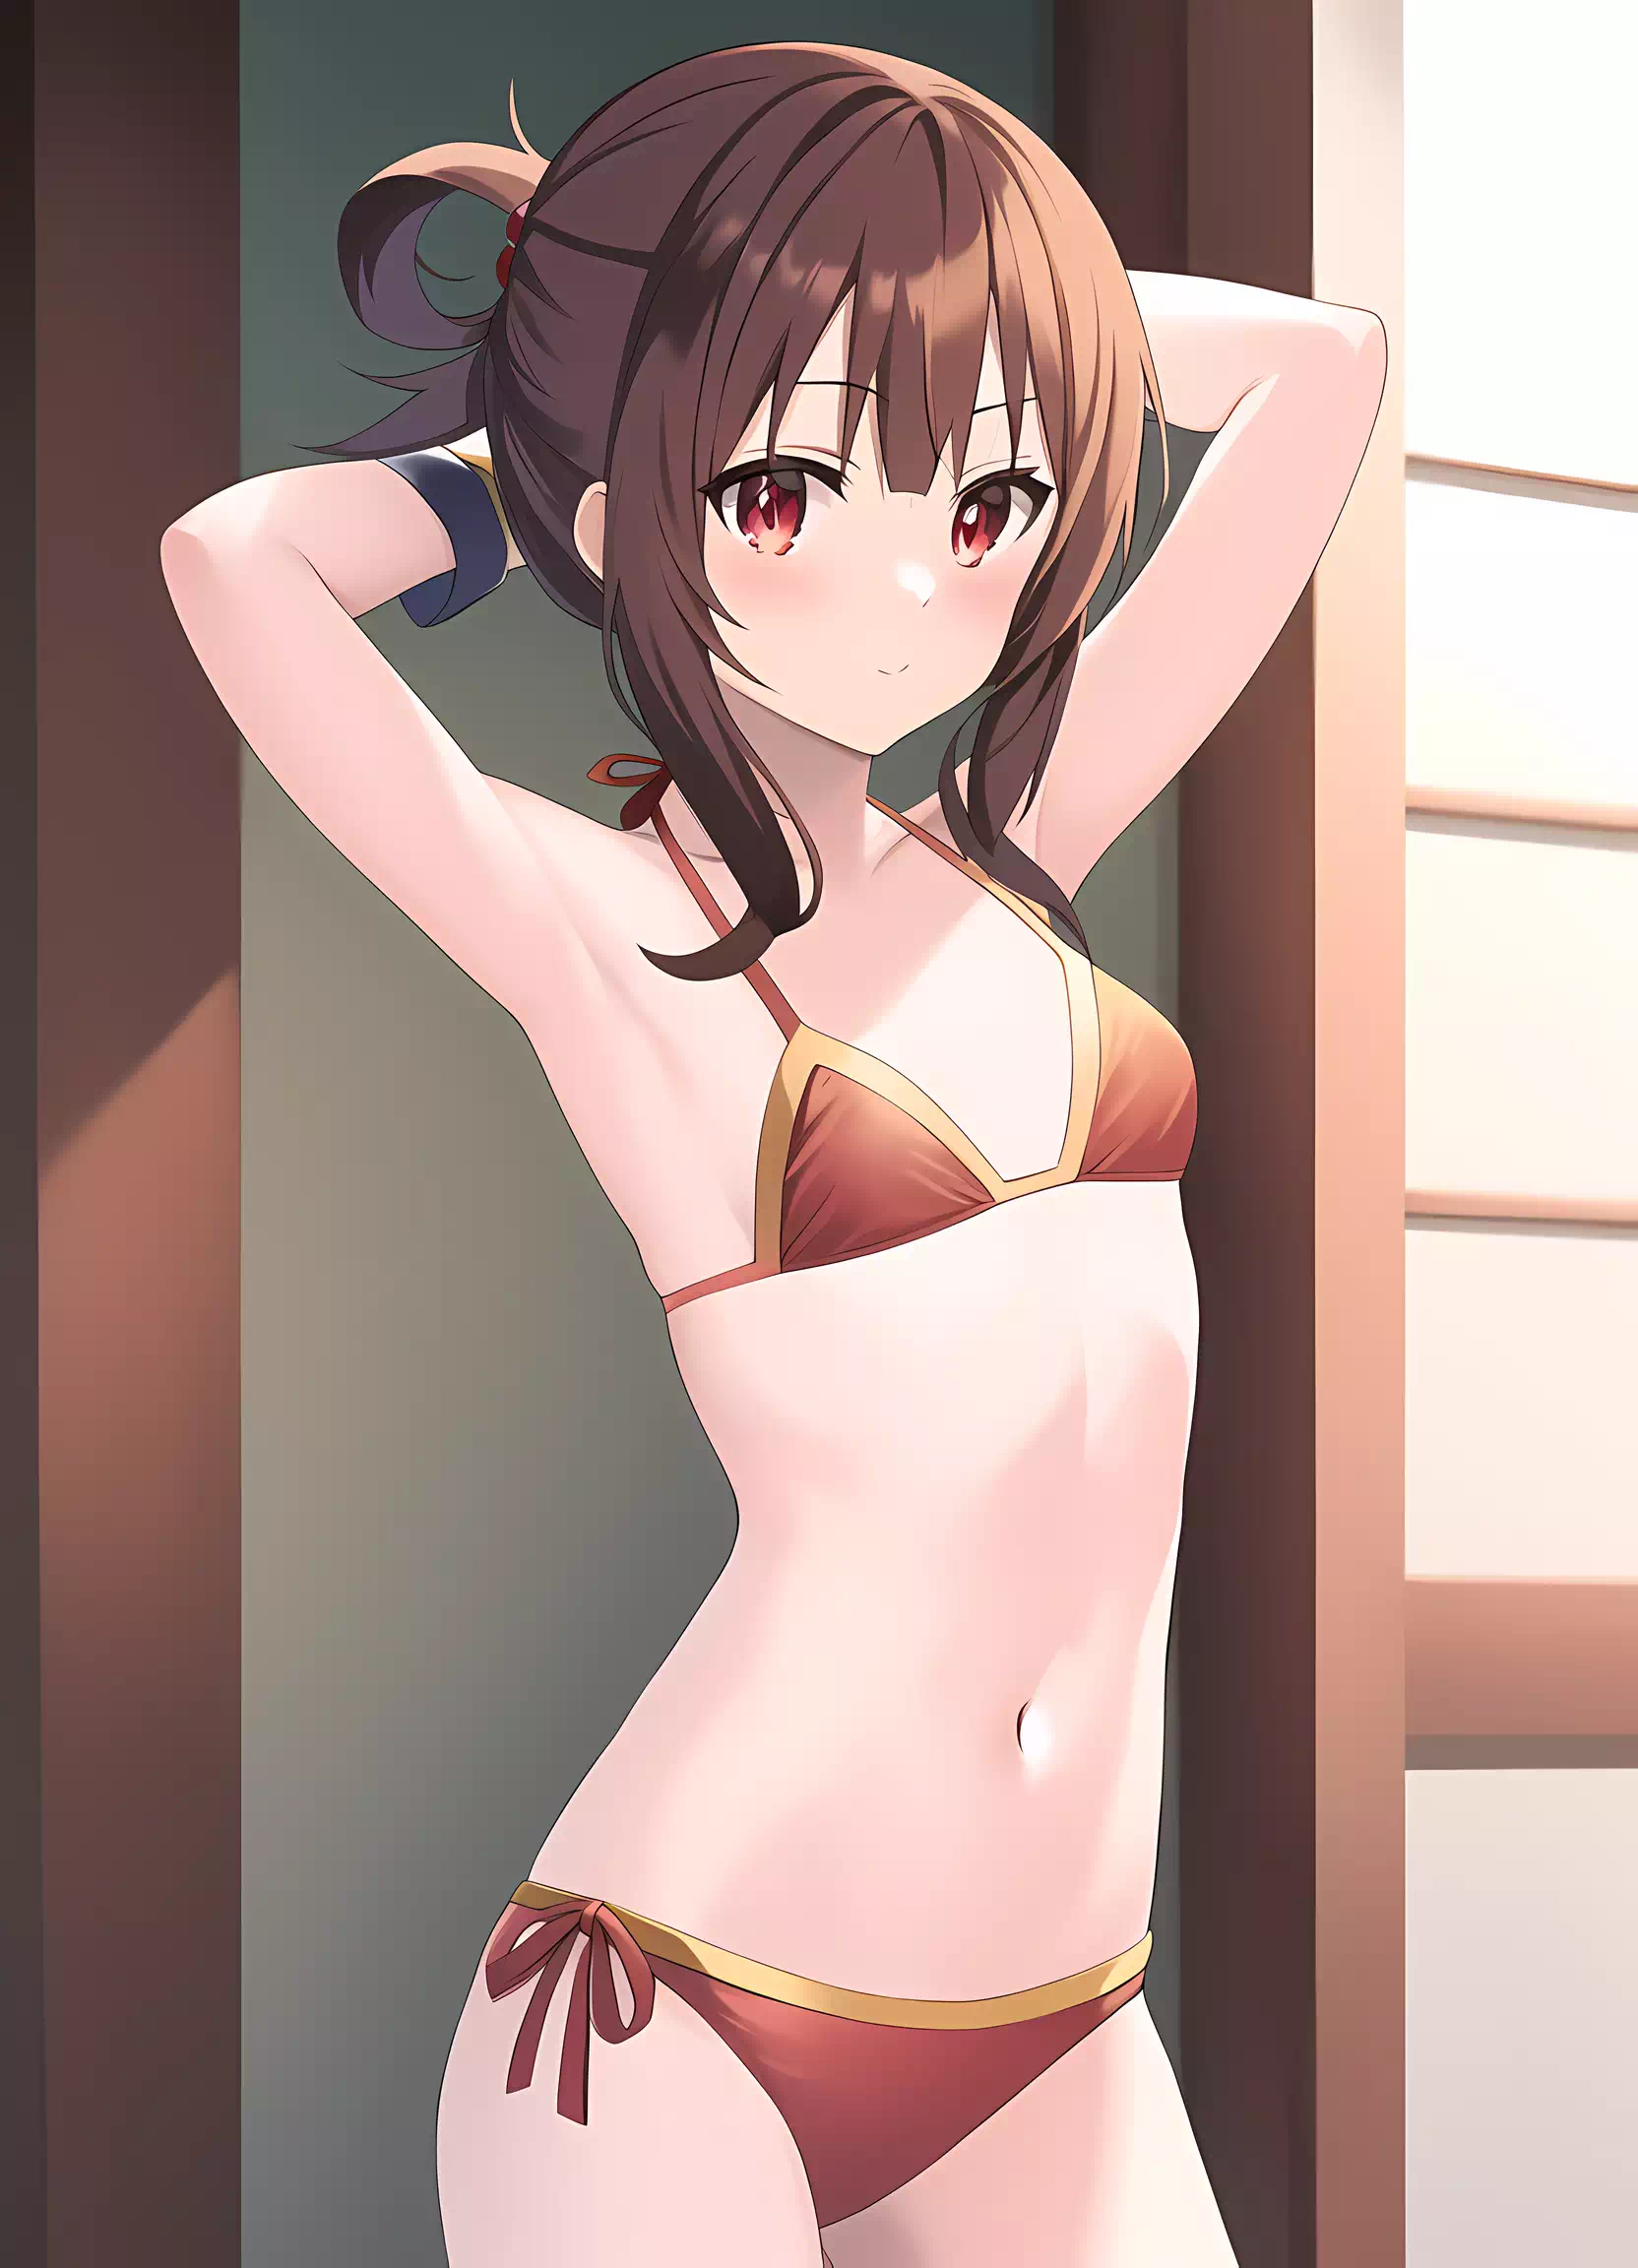 Konosuba Megumin in bikini